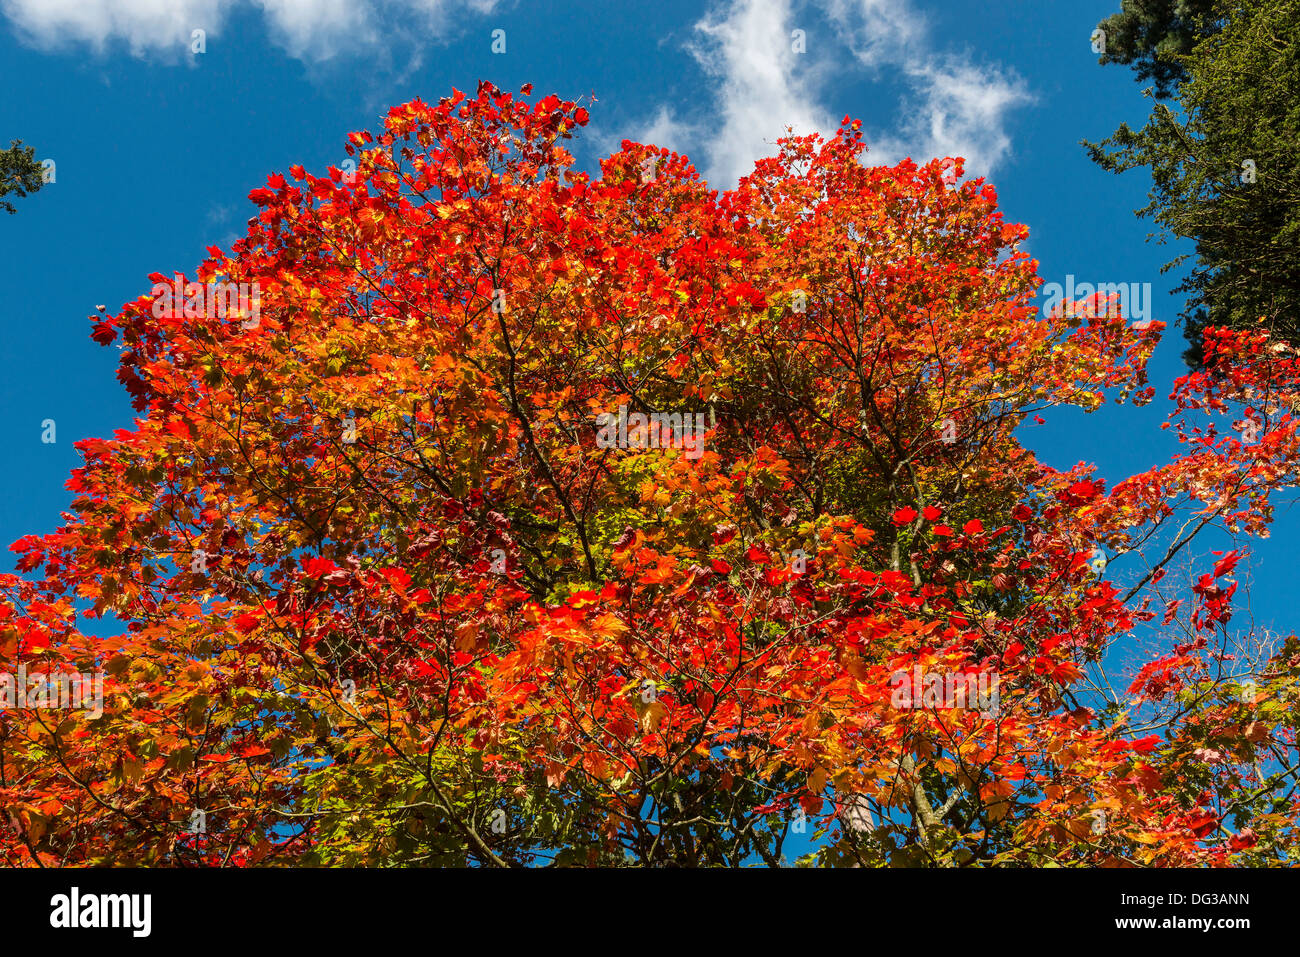 Acer-Baum in Herbstfarben in National Arboretum, Westonbirt nr Tetbury Glos. Engalnd UK. von der Forestry Commission verwaltet. Stockfoto